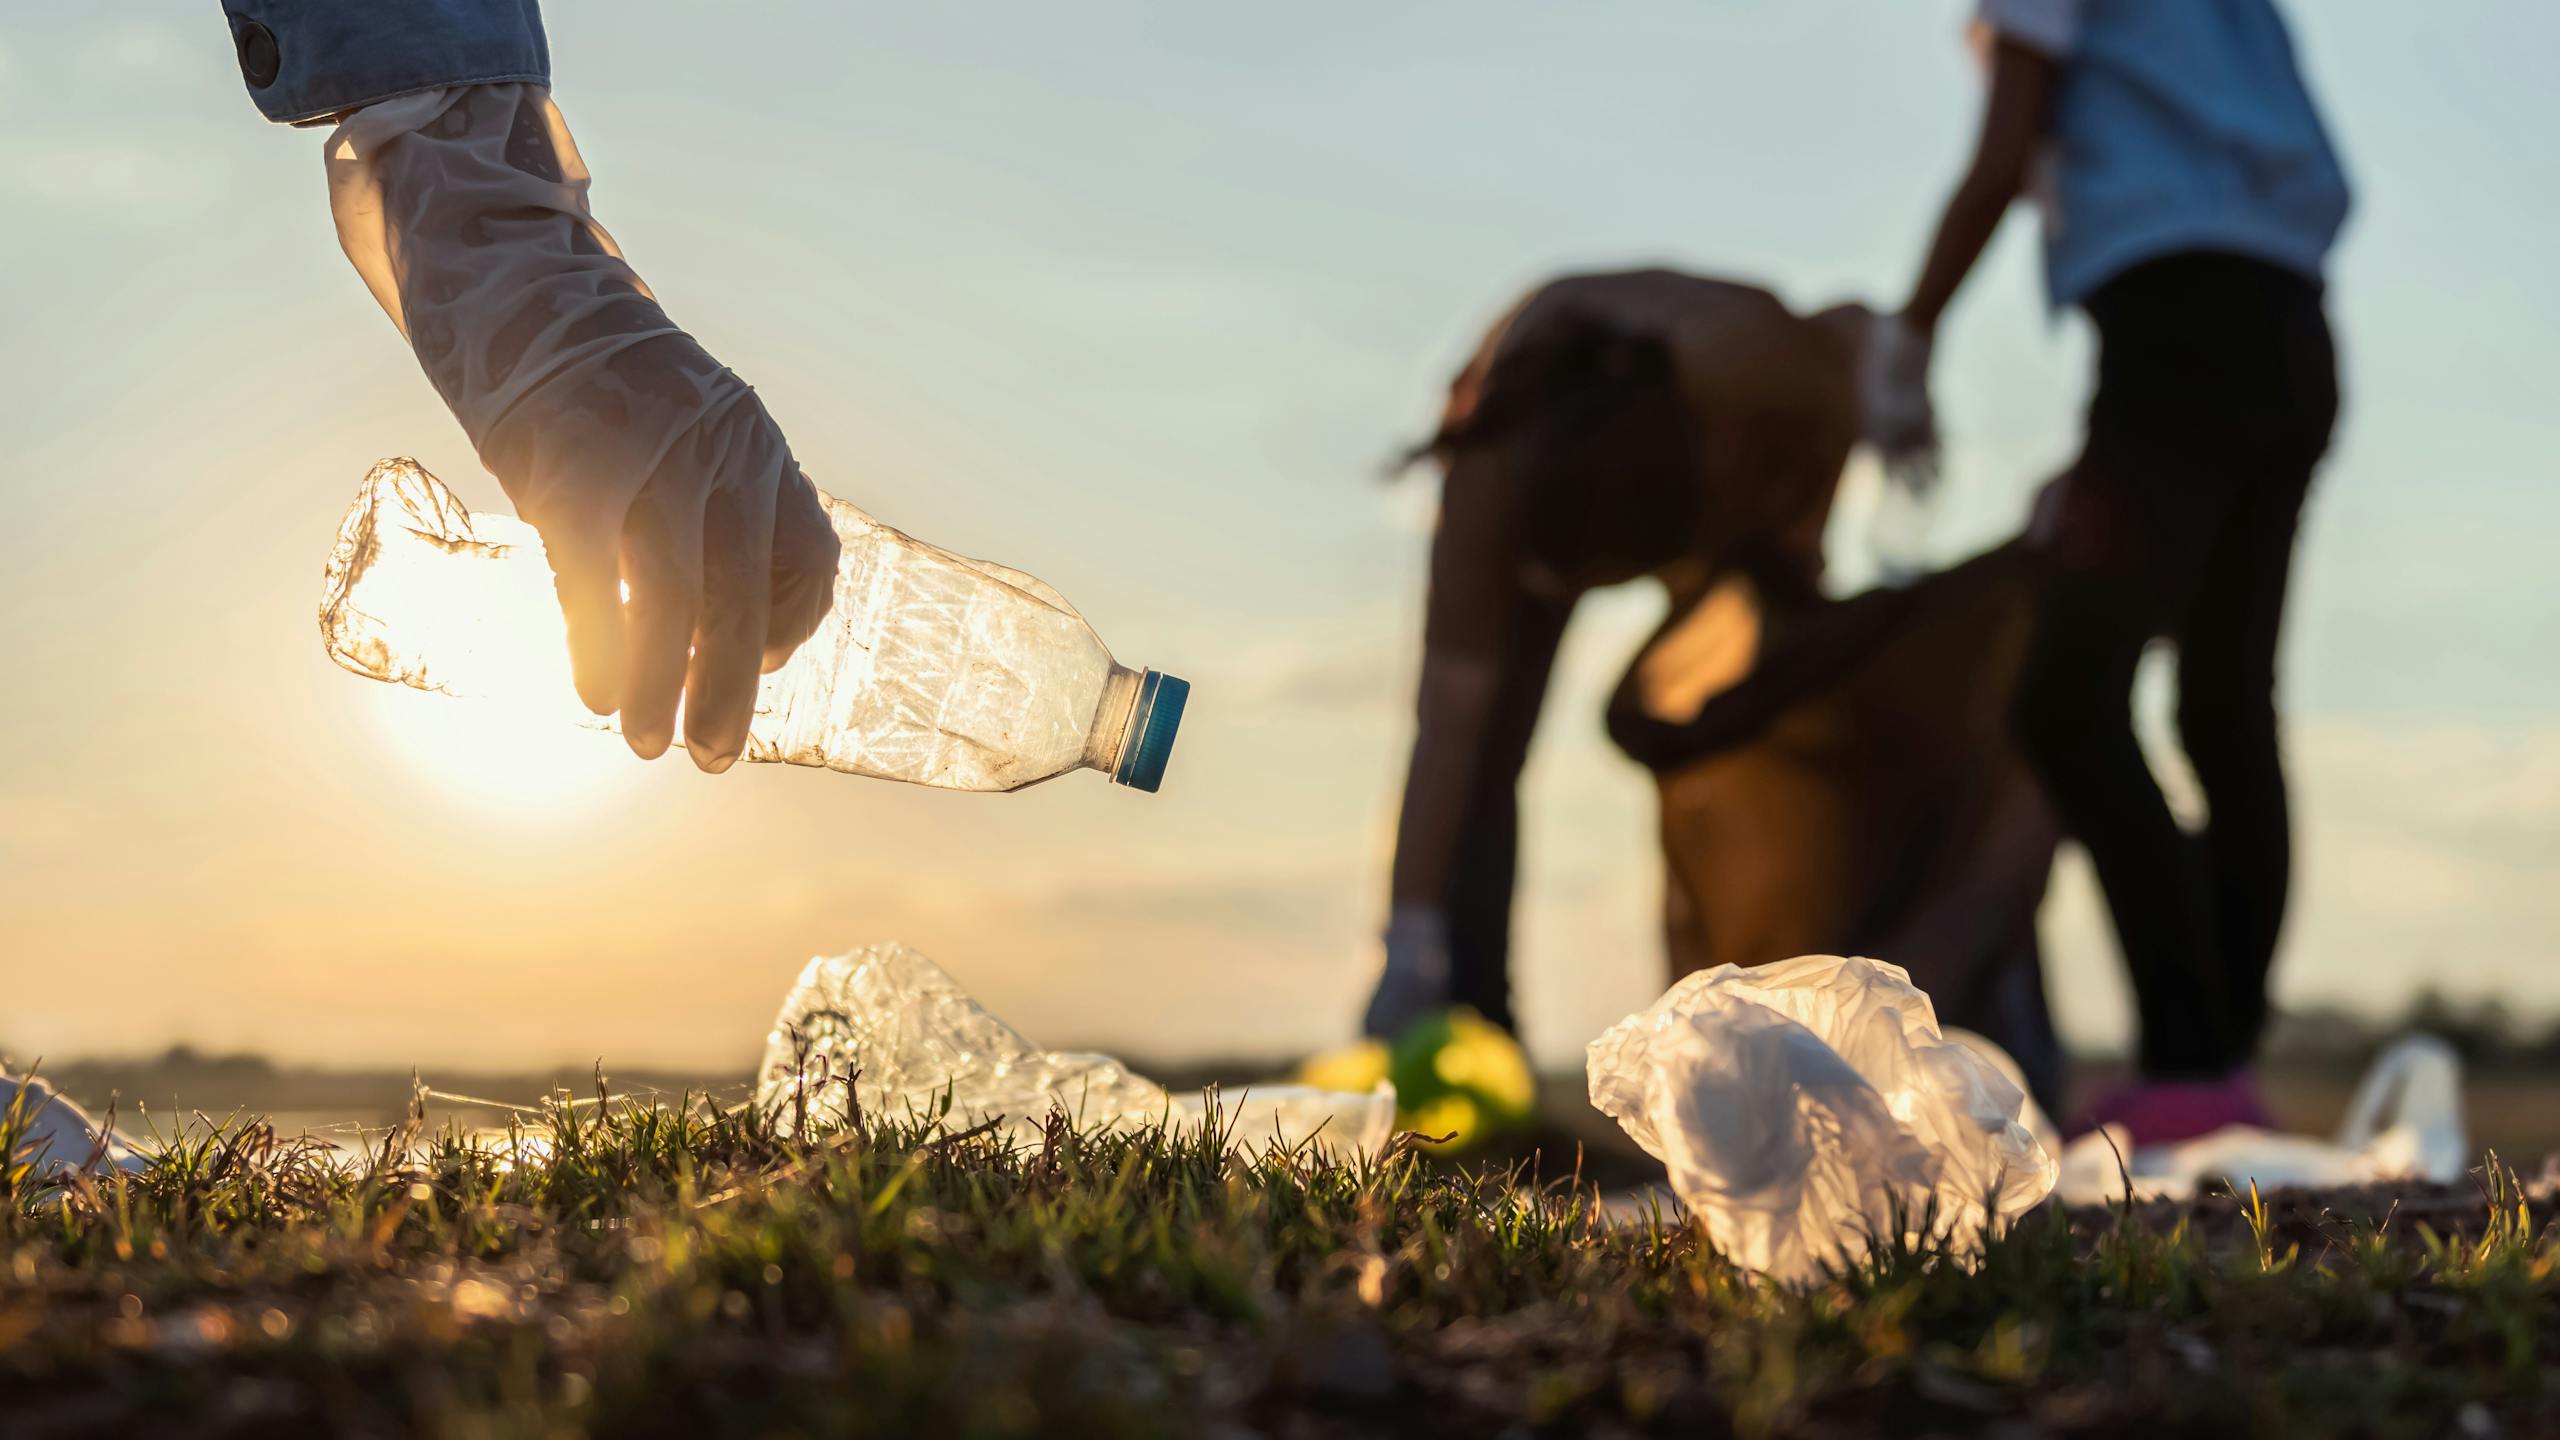 Image de quelqu'un avec un gant qui ramasse une bouteille d'eau. Dans le fond plusieurs personnes faisant la même chose.